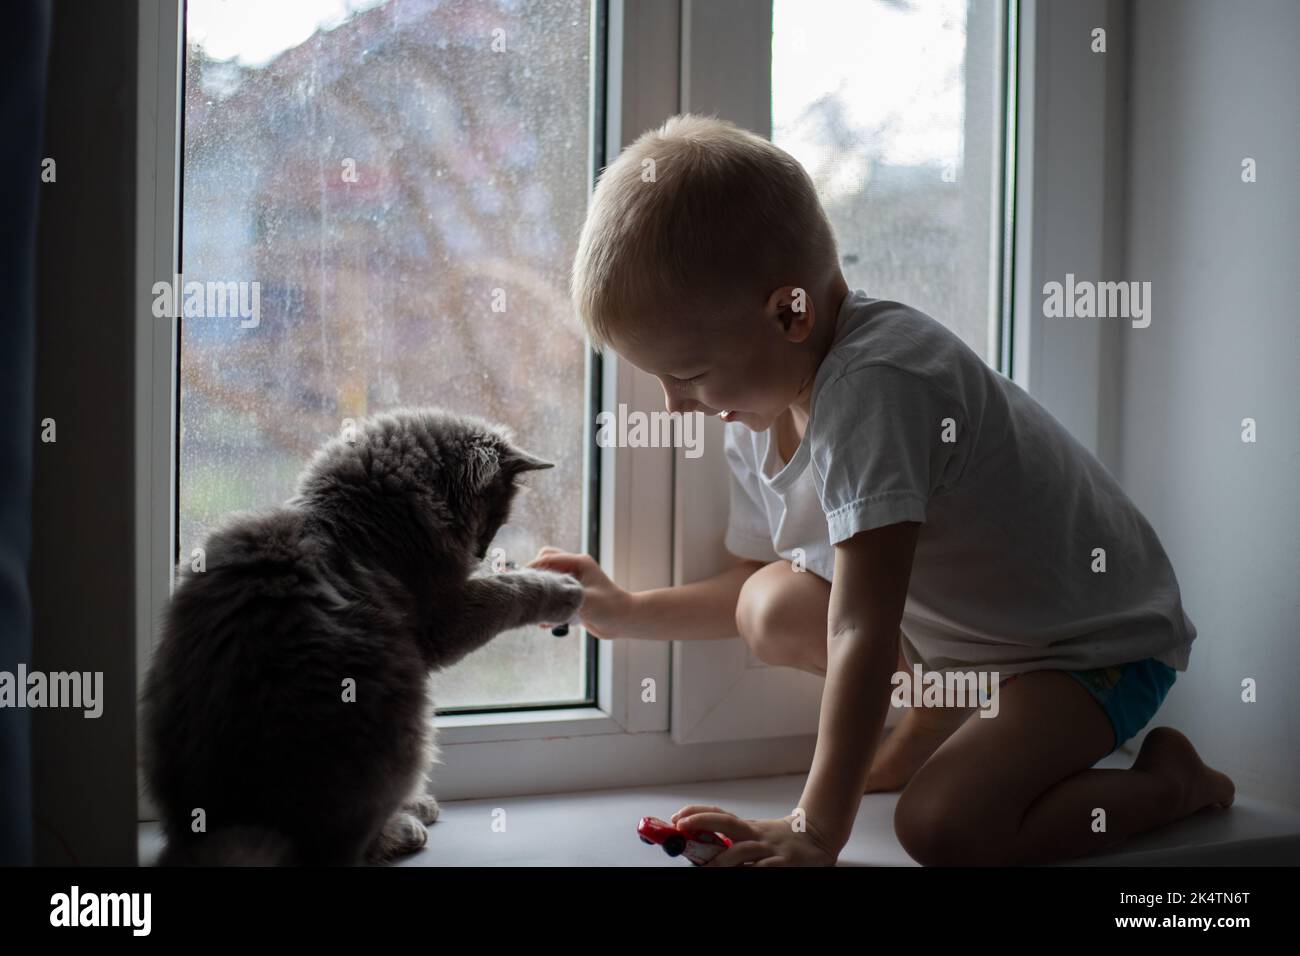 Ein Kind zu Hause sitzt mit einer grauen Katze auf dem Fenster, ein Kind spielt mit einer Katze. Graue Katze, Grautöne. Liebe für Tiere. Stockfoto